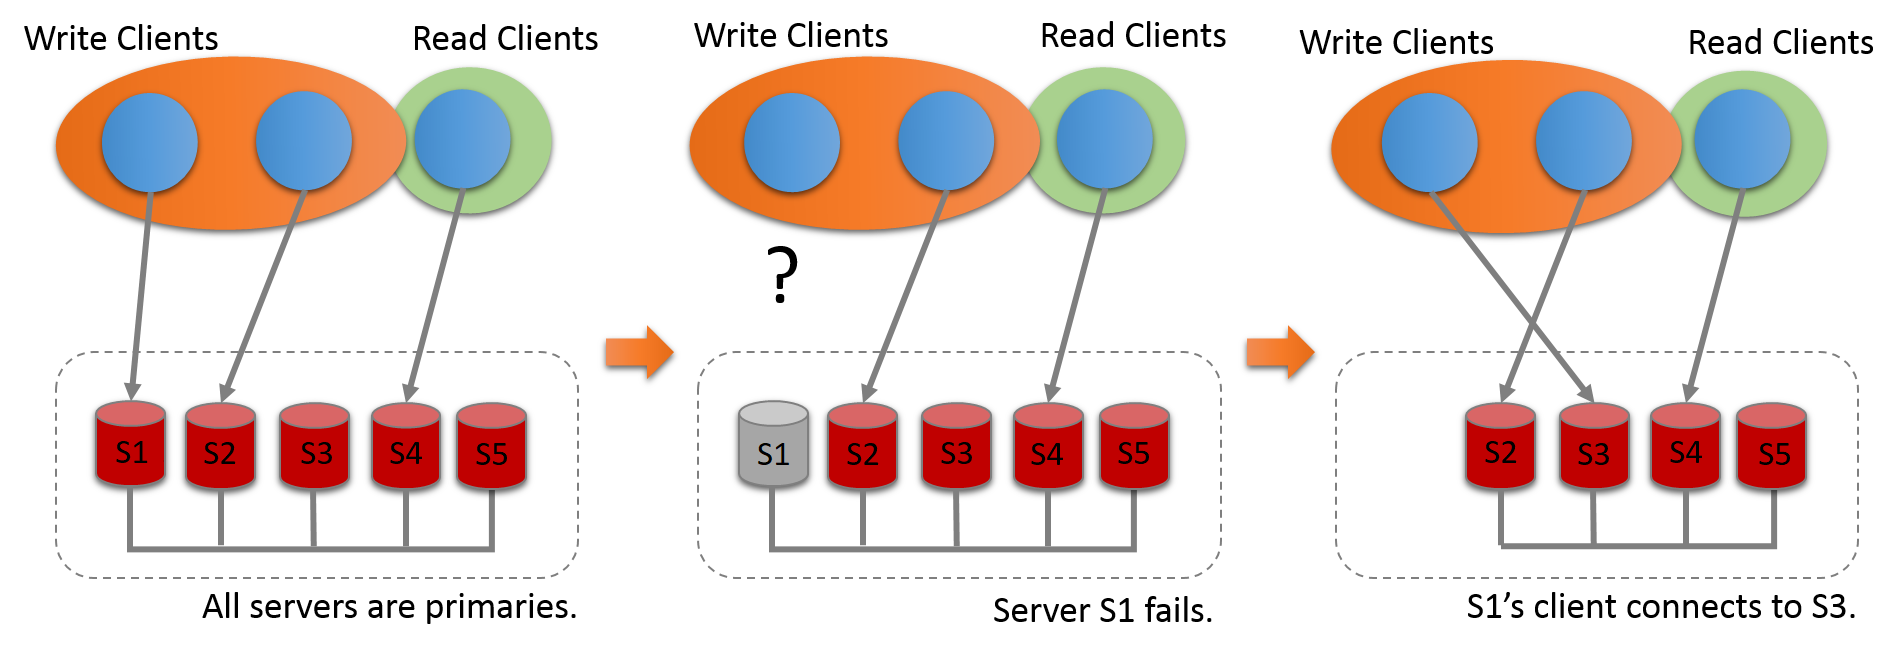 インターコネクトされたグループとして、5 つのサーバーインスタンス (S1、S2、S3、S4 および S5) がデプロイされます。 すべてのサーバーがプライマリです。 書込みクライアントはサーバー S1 および S2 と通信し、読取りクライアントはサーバー S4 と通信しています。 Server S1 が失敗し、書込みクライアントとの通信が切断されます。 このクライアントは、サーバー S3 に再接続します。